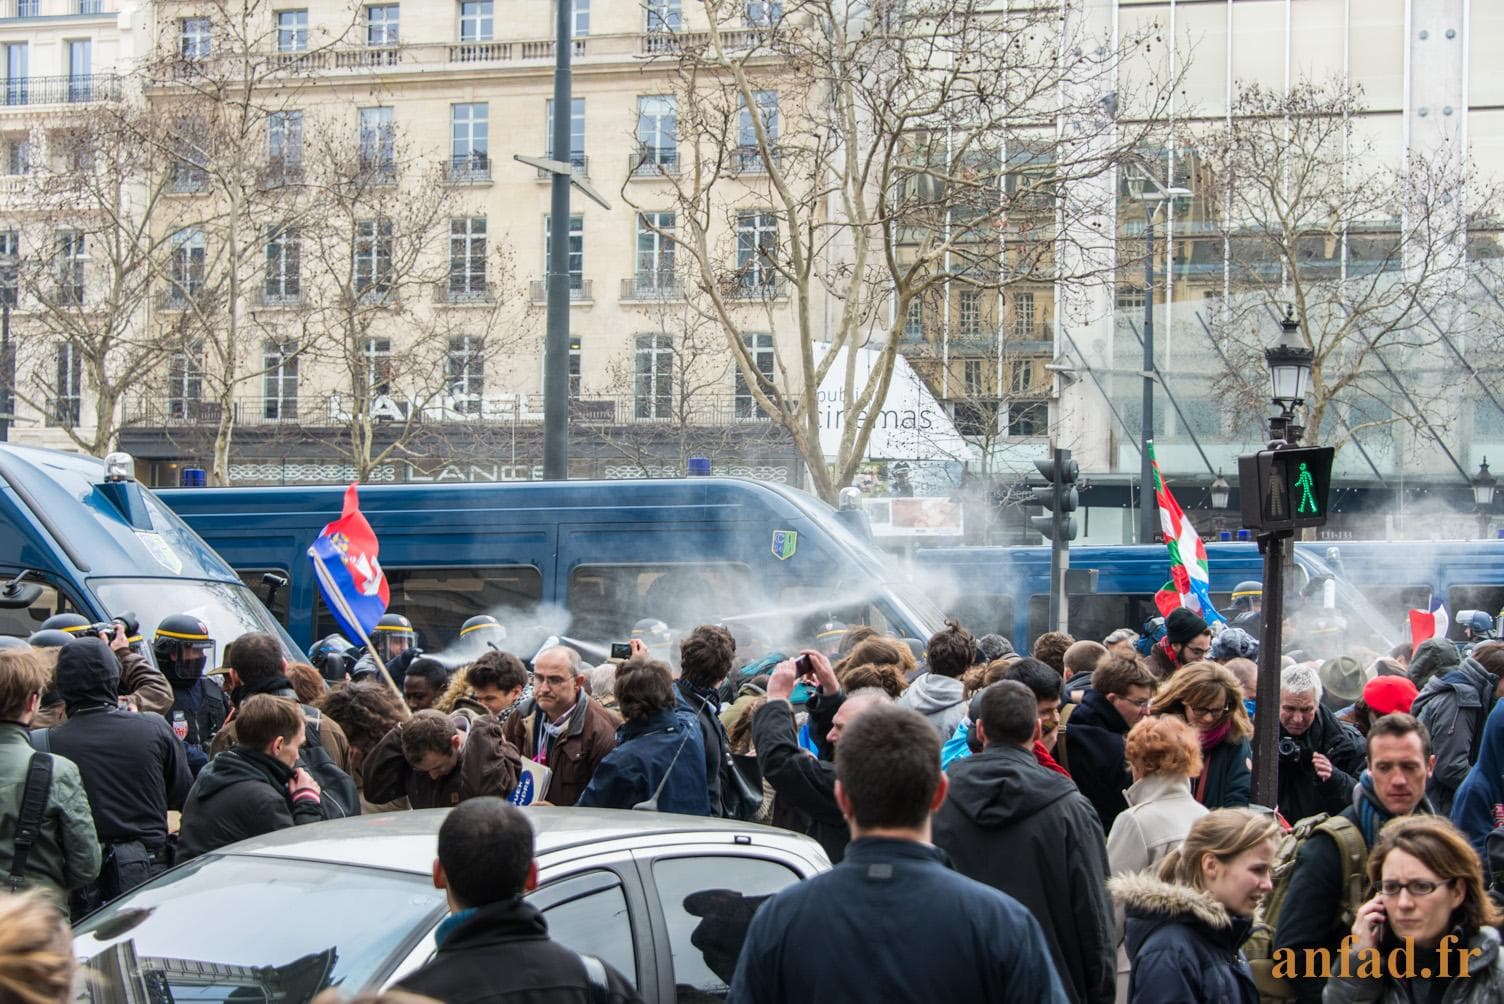 Manifestation contre le mariage homosexuel 24 mars 2013 - Des CRS projettes des gaz lacrymogènes sur la foule devant les Champs-Élysées - 24/03/2013 16:46